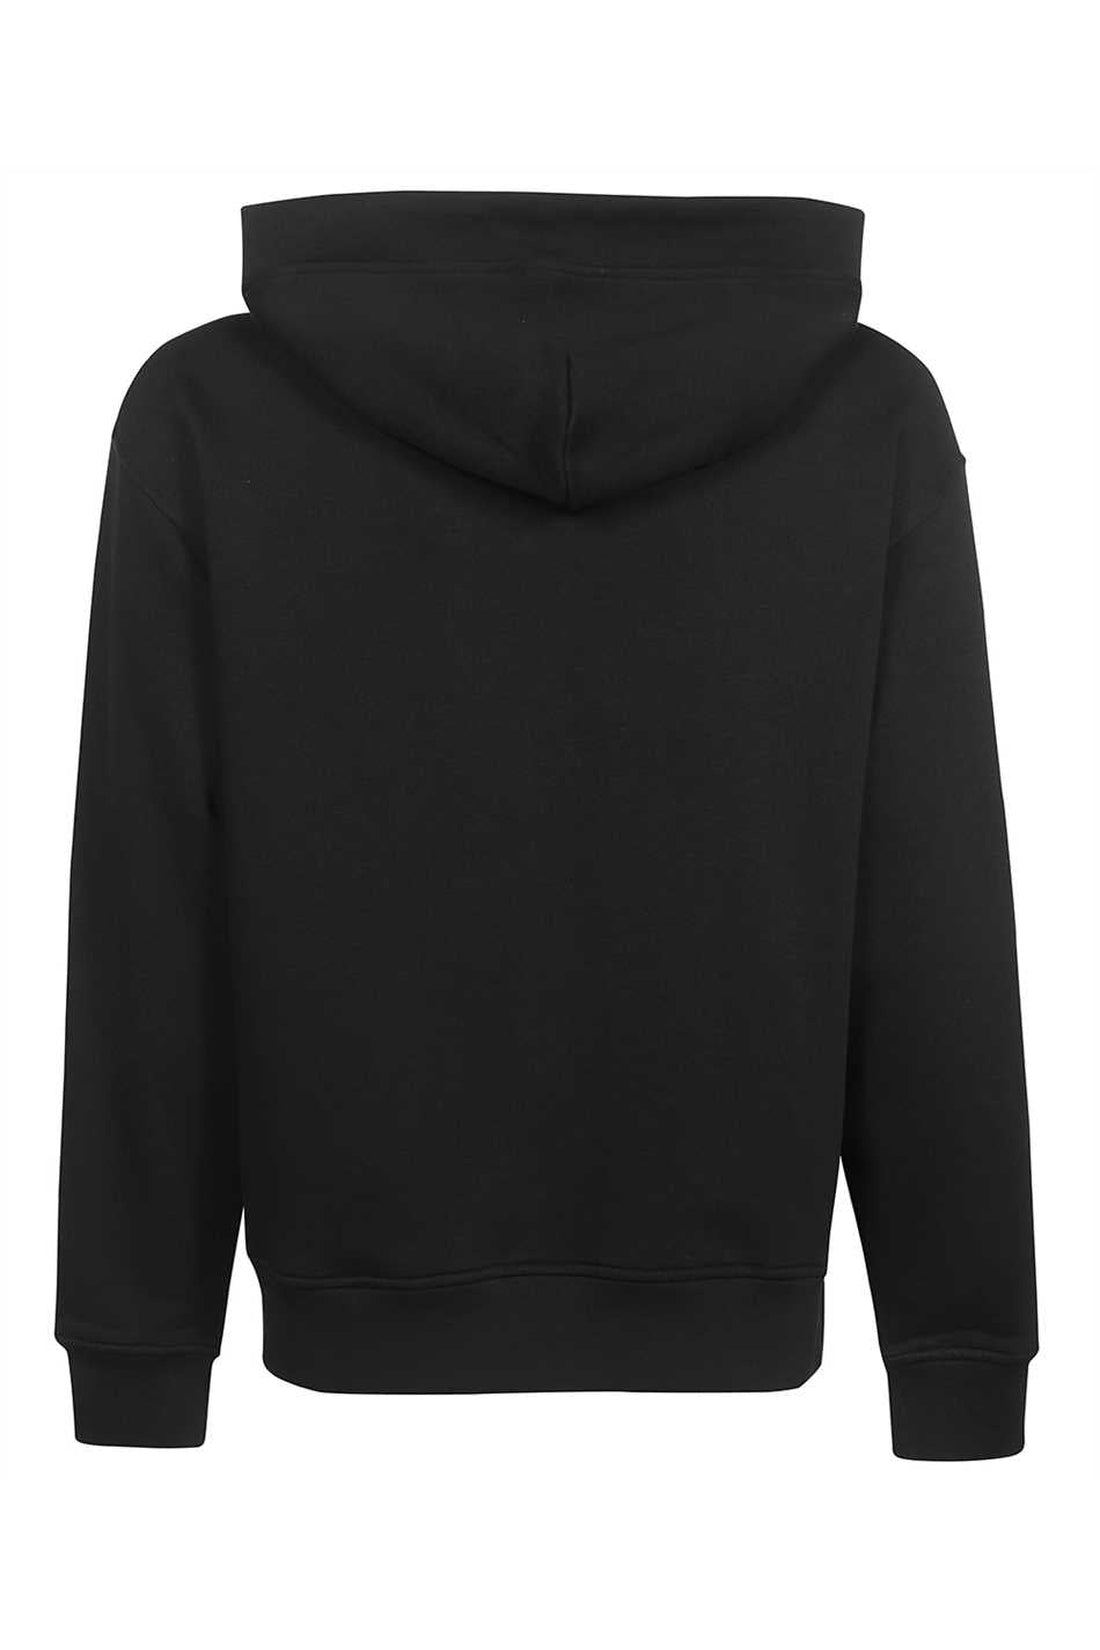 Vivienne Westwood-OUTLET-SALE-Full zip hoodie-ARCHIVIST